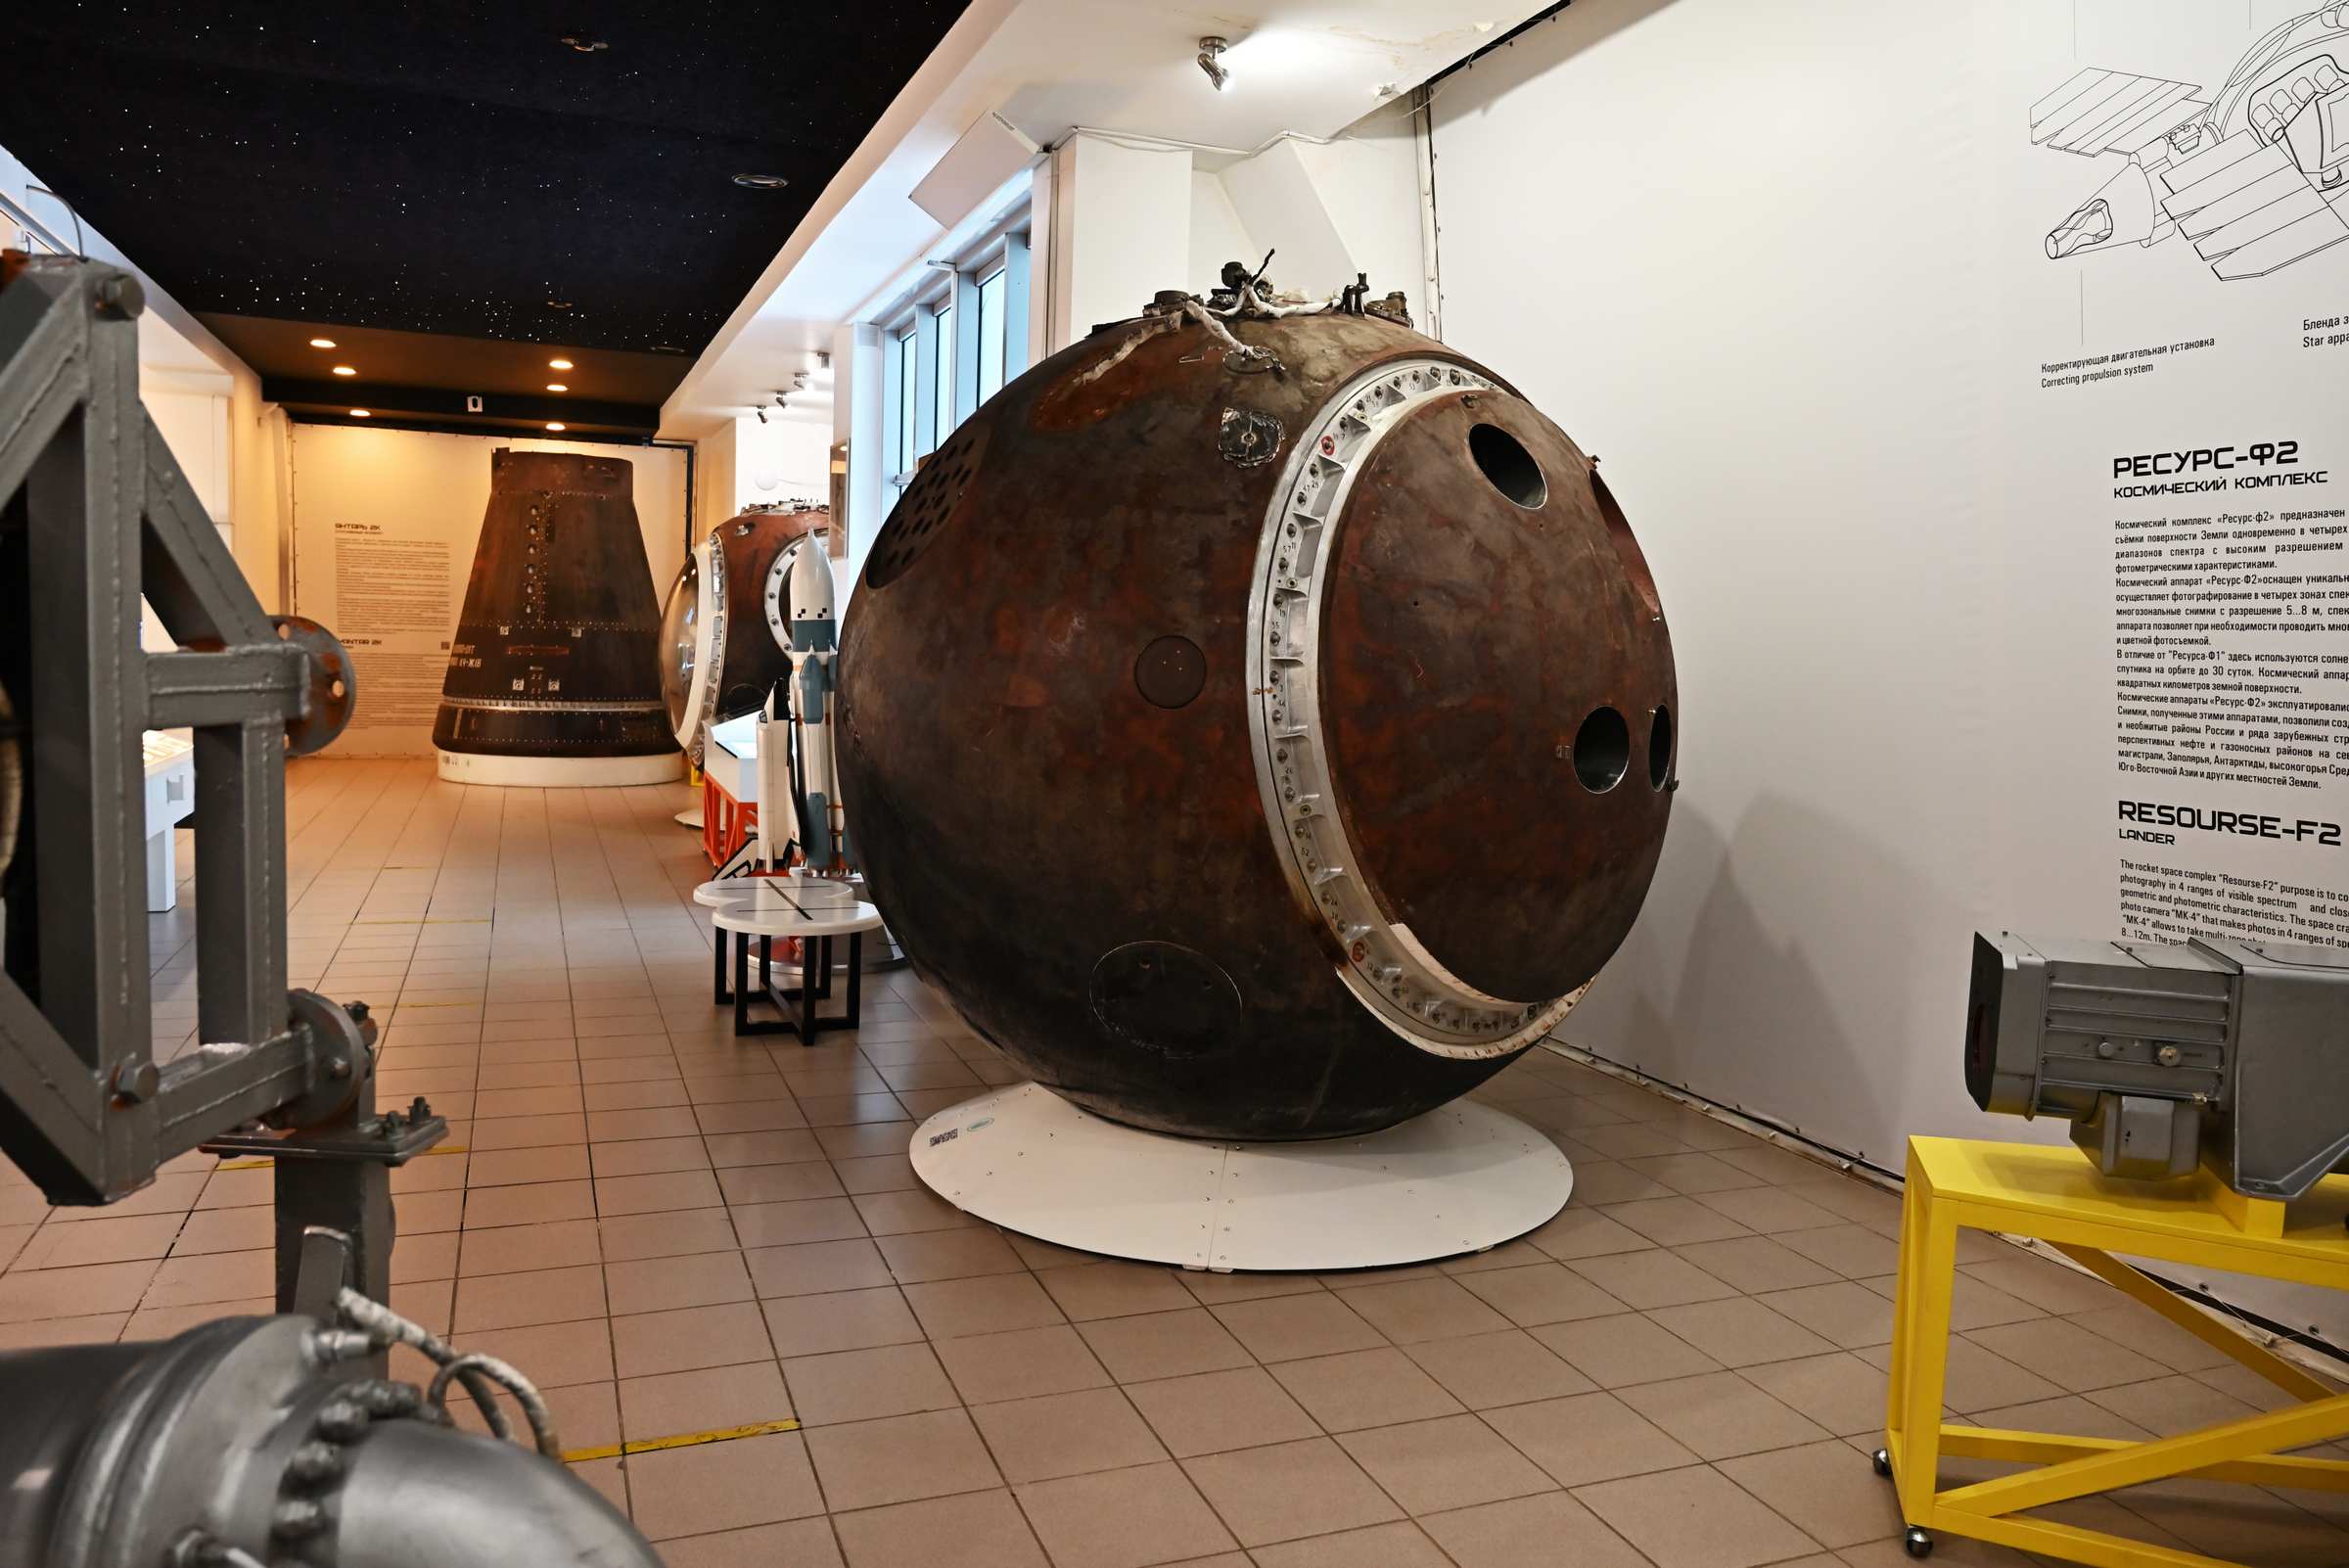 Постоянная экспозиция «Самара Космическая». Спускаемый аппарат «Ресурс-Ф2».